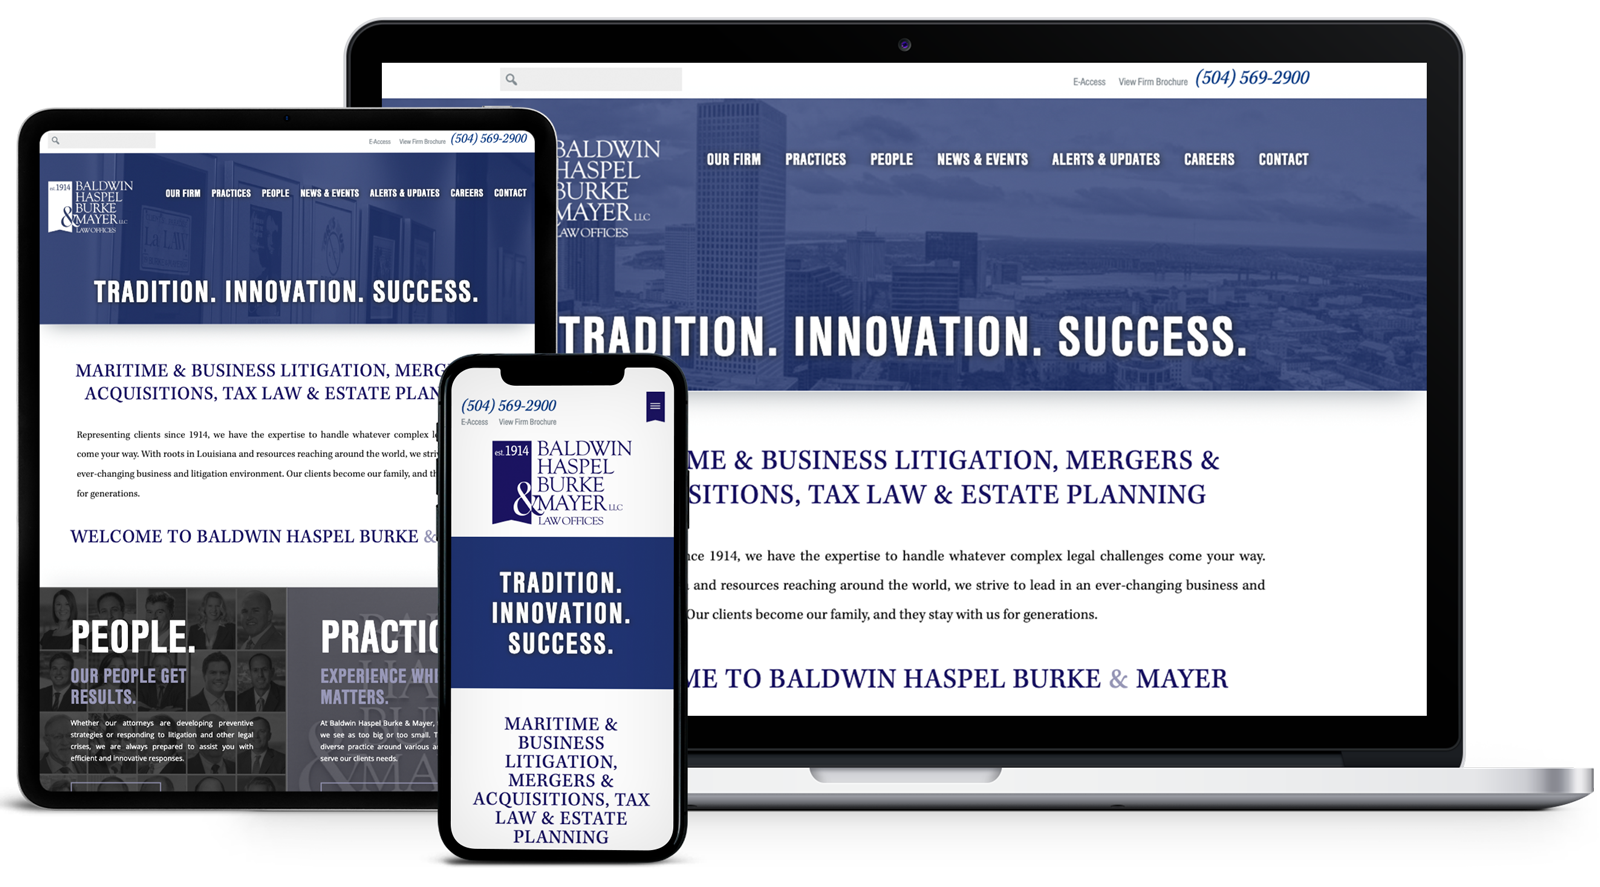 Baldwin Haspel Burke & Mayer website